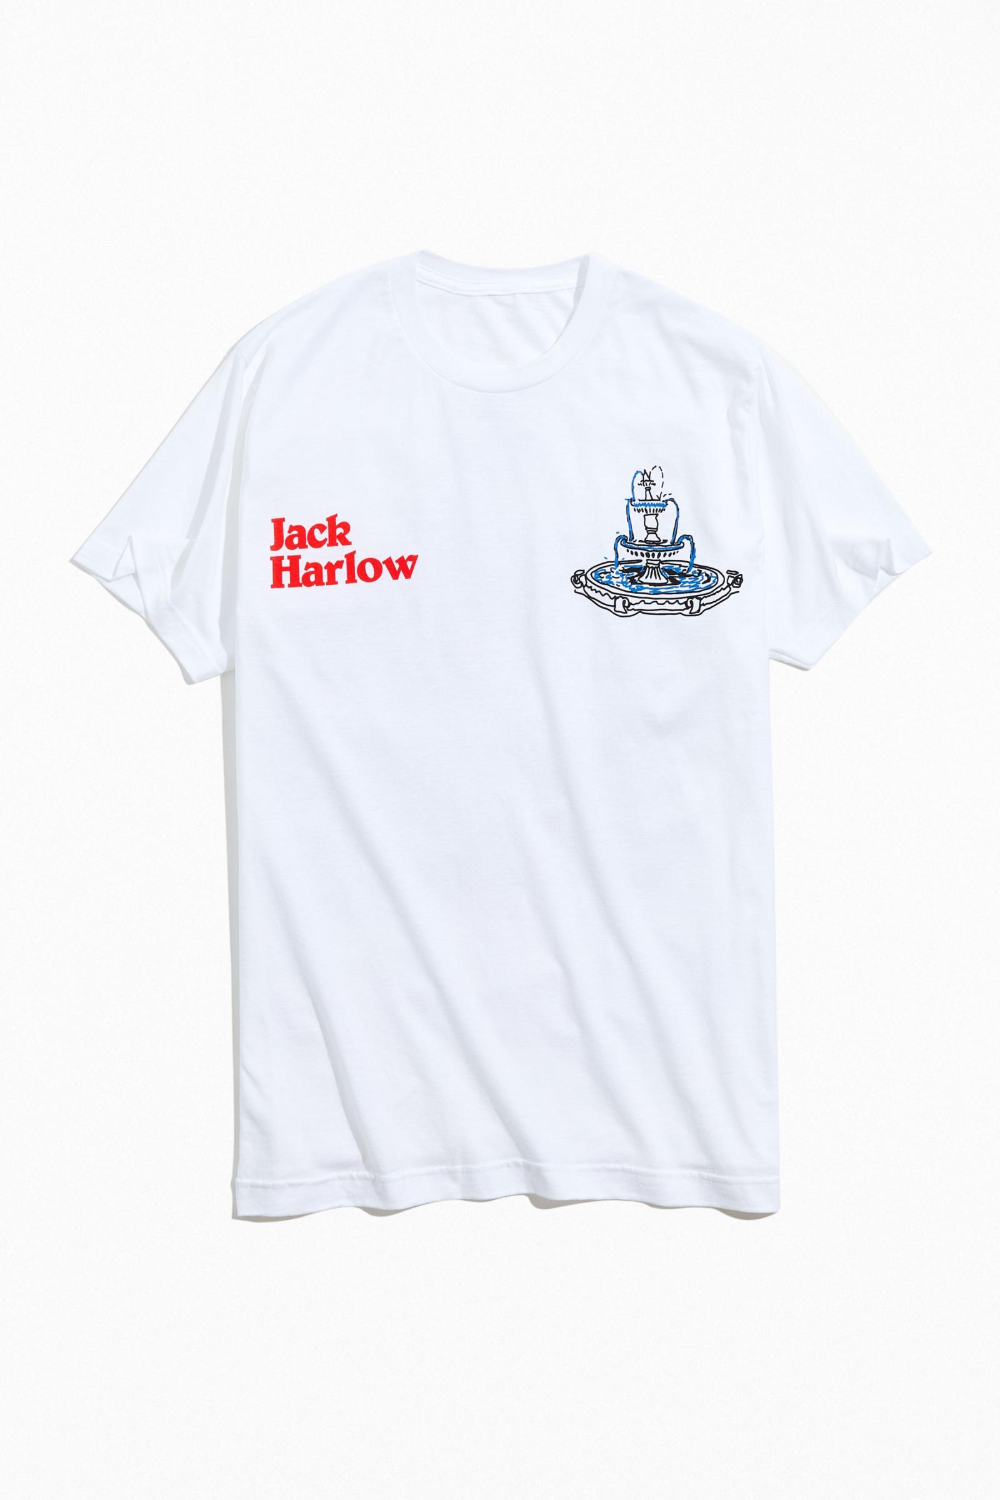 Jack Harlow Merchandise: Rock the Latest Streetwear